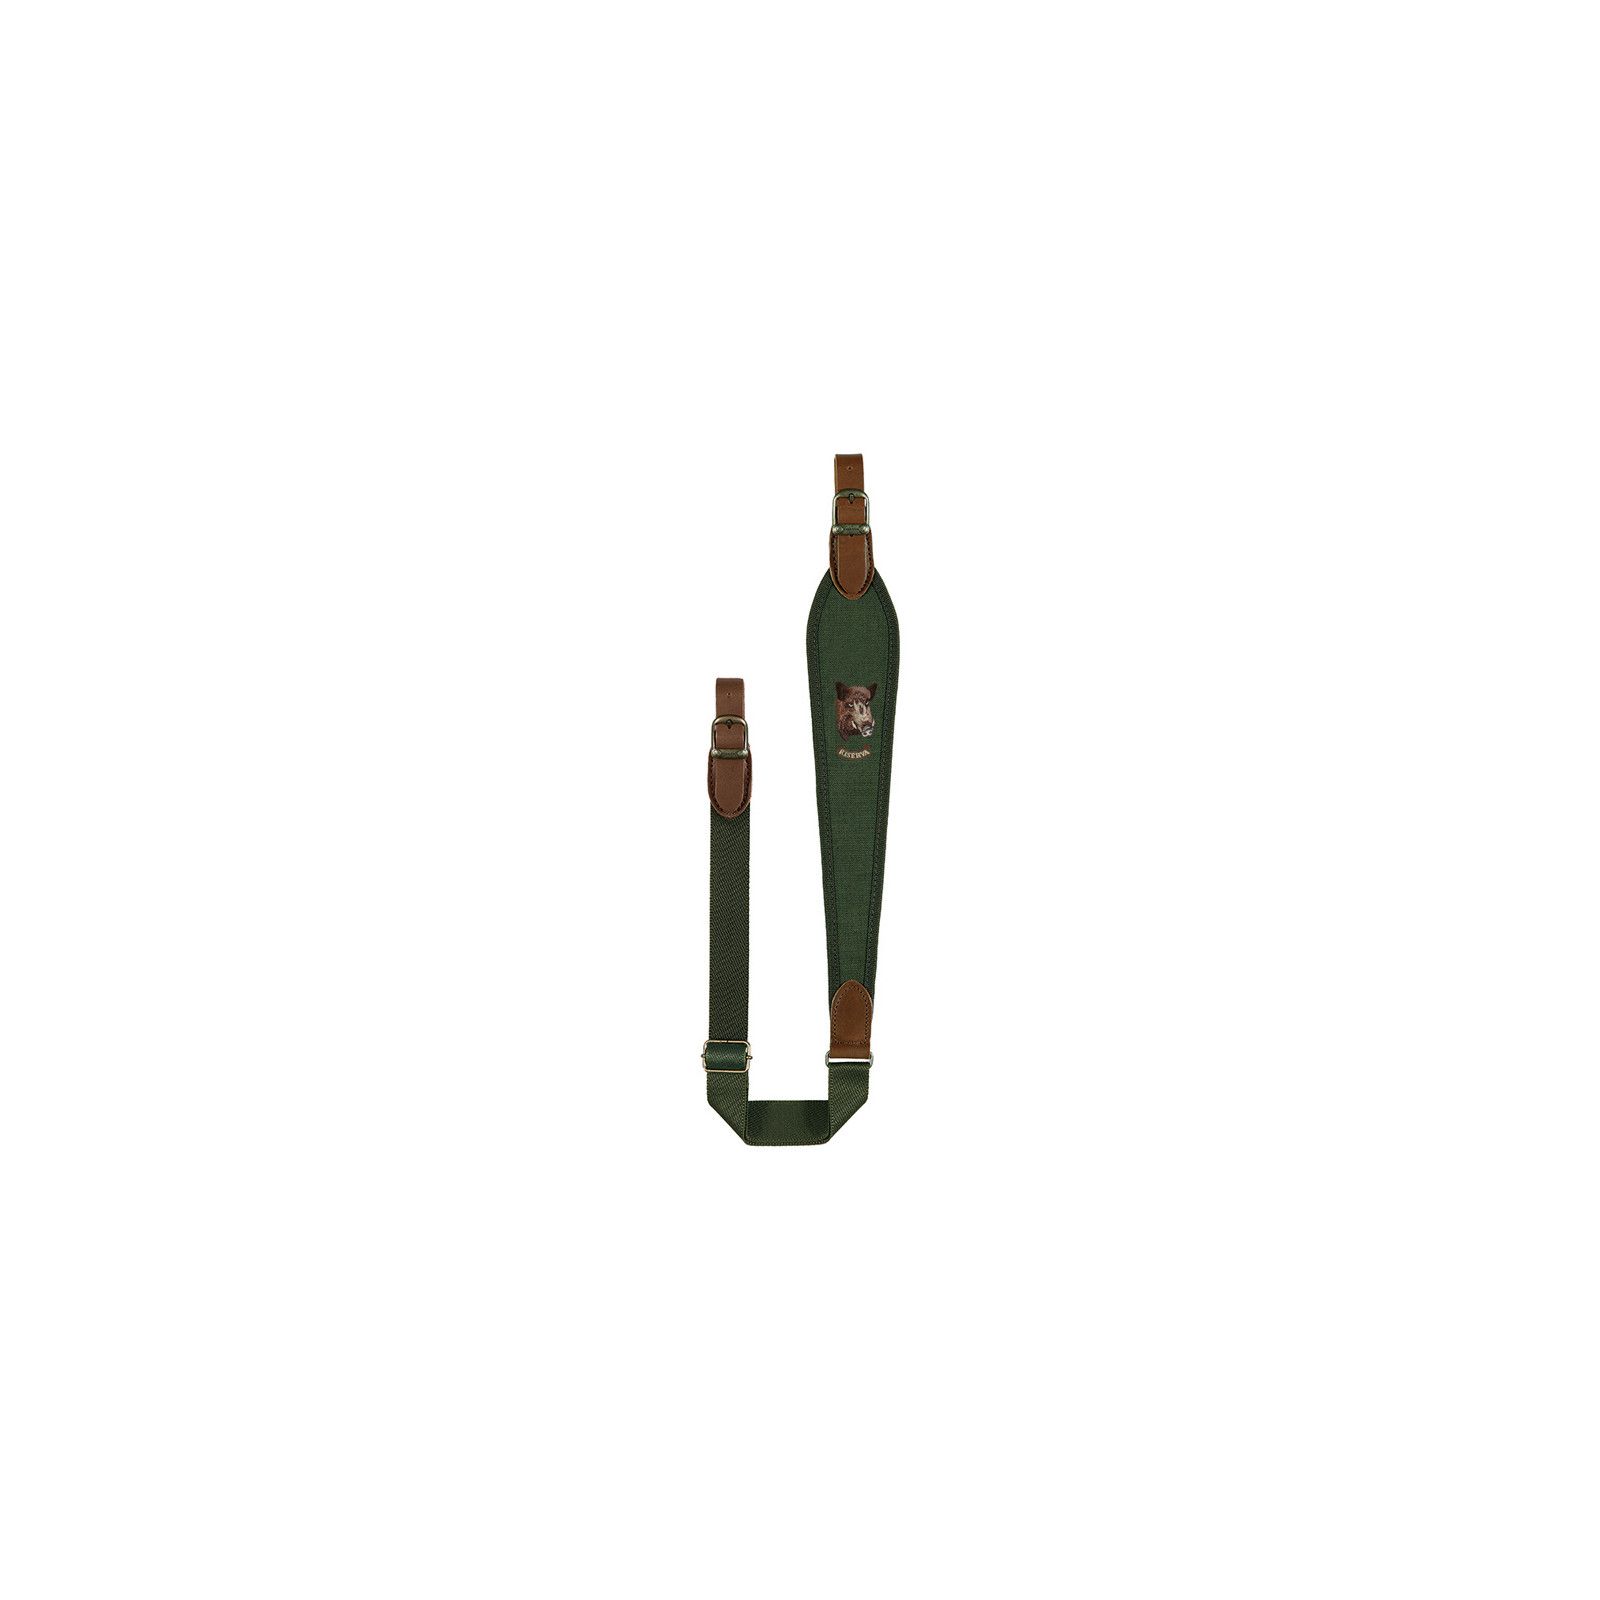 Portafusil rifle cordura riserva motivo jabali verde